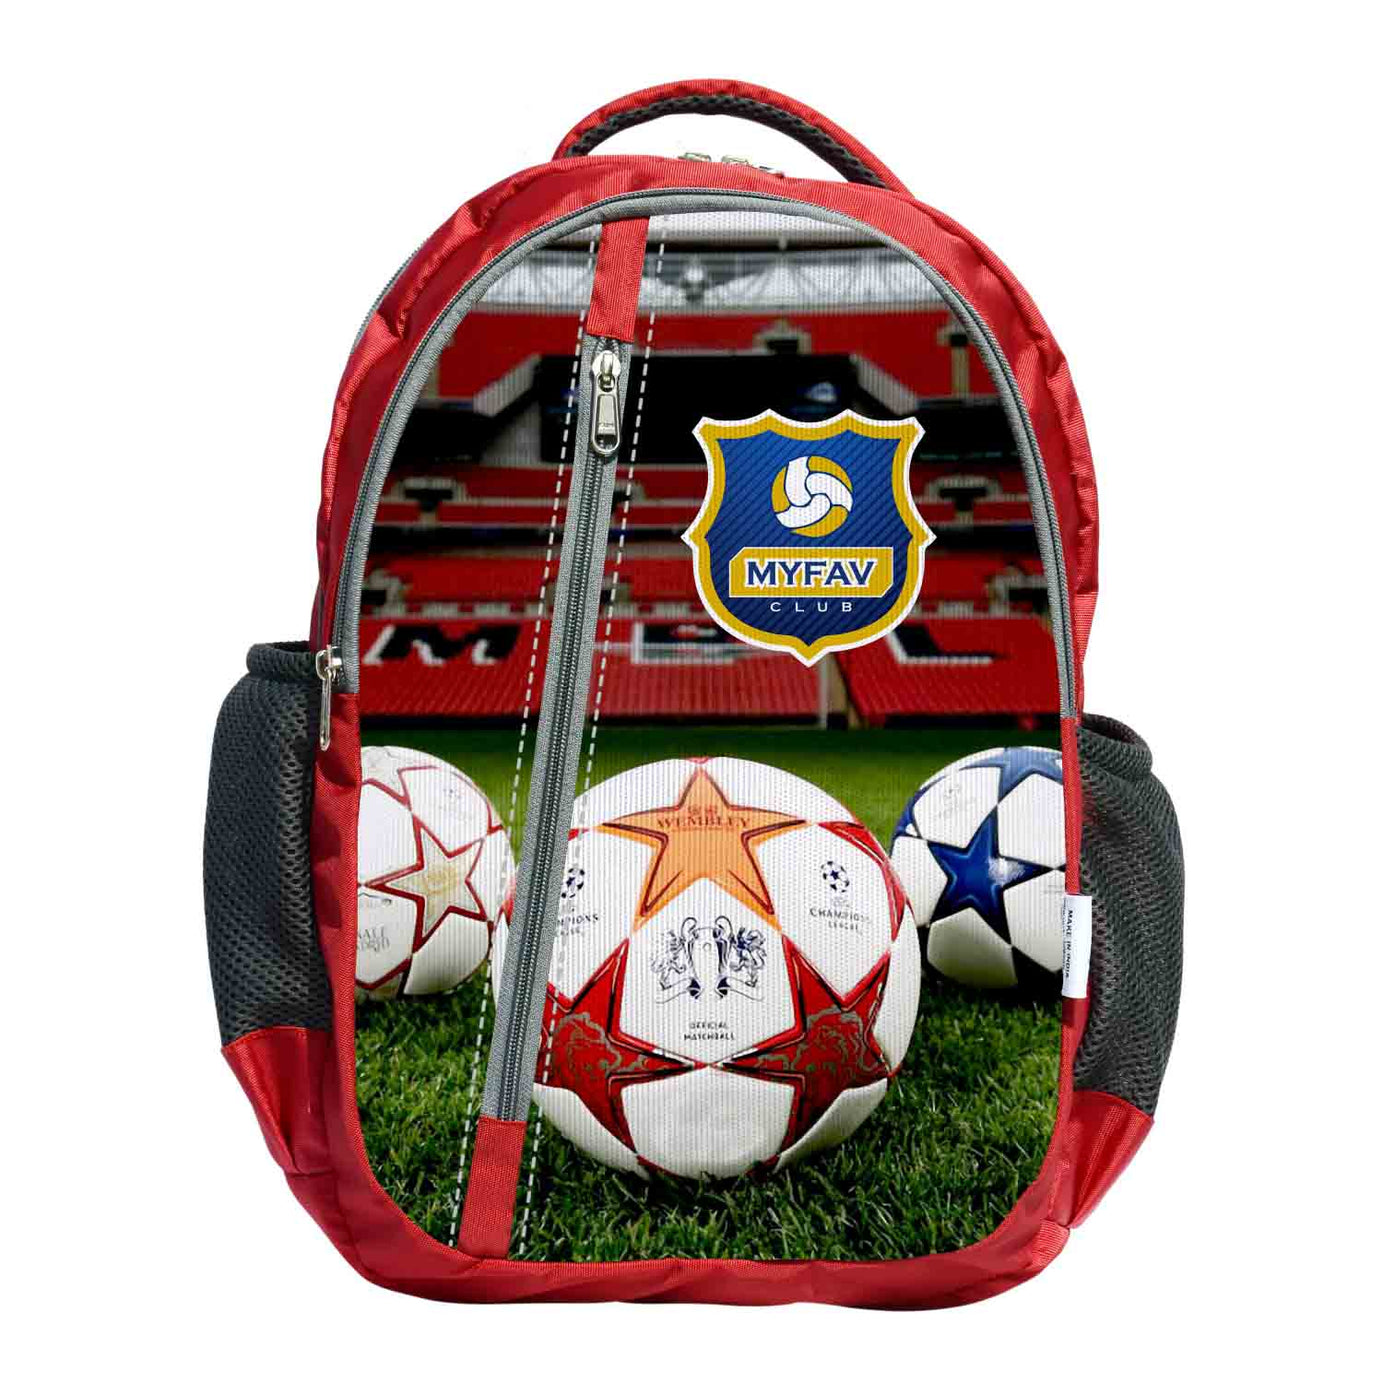 My Fav Football Print Laptop Backpack For Men Women / School Bag For Boys Girls